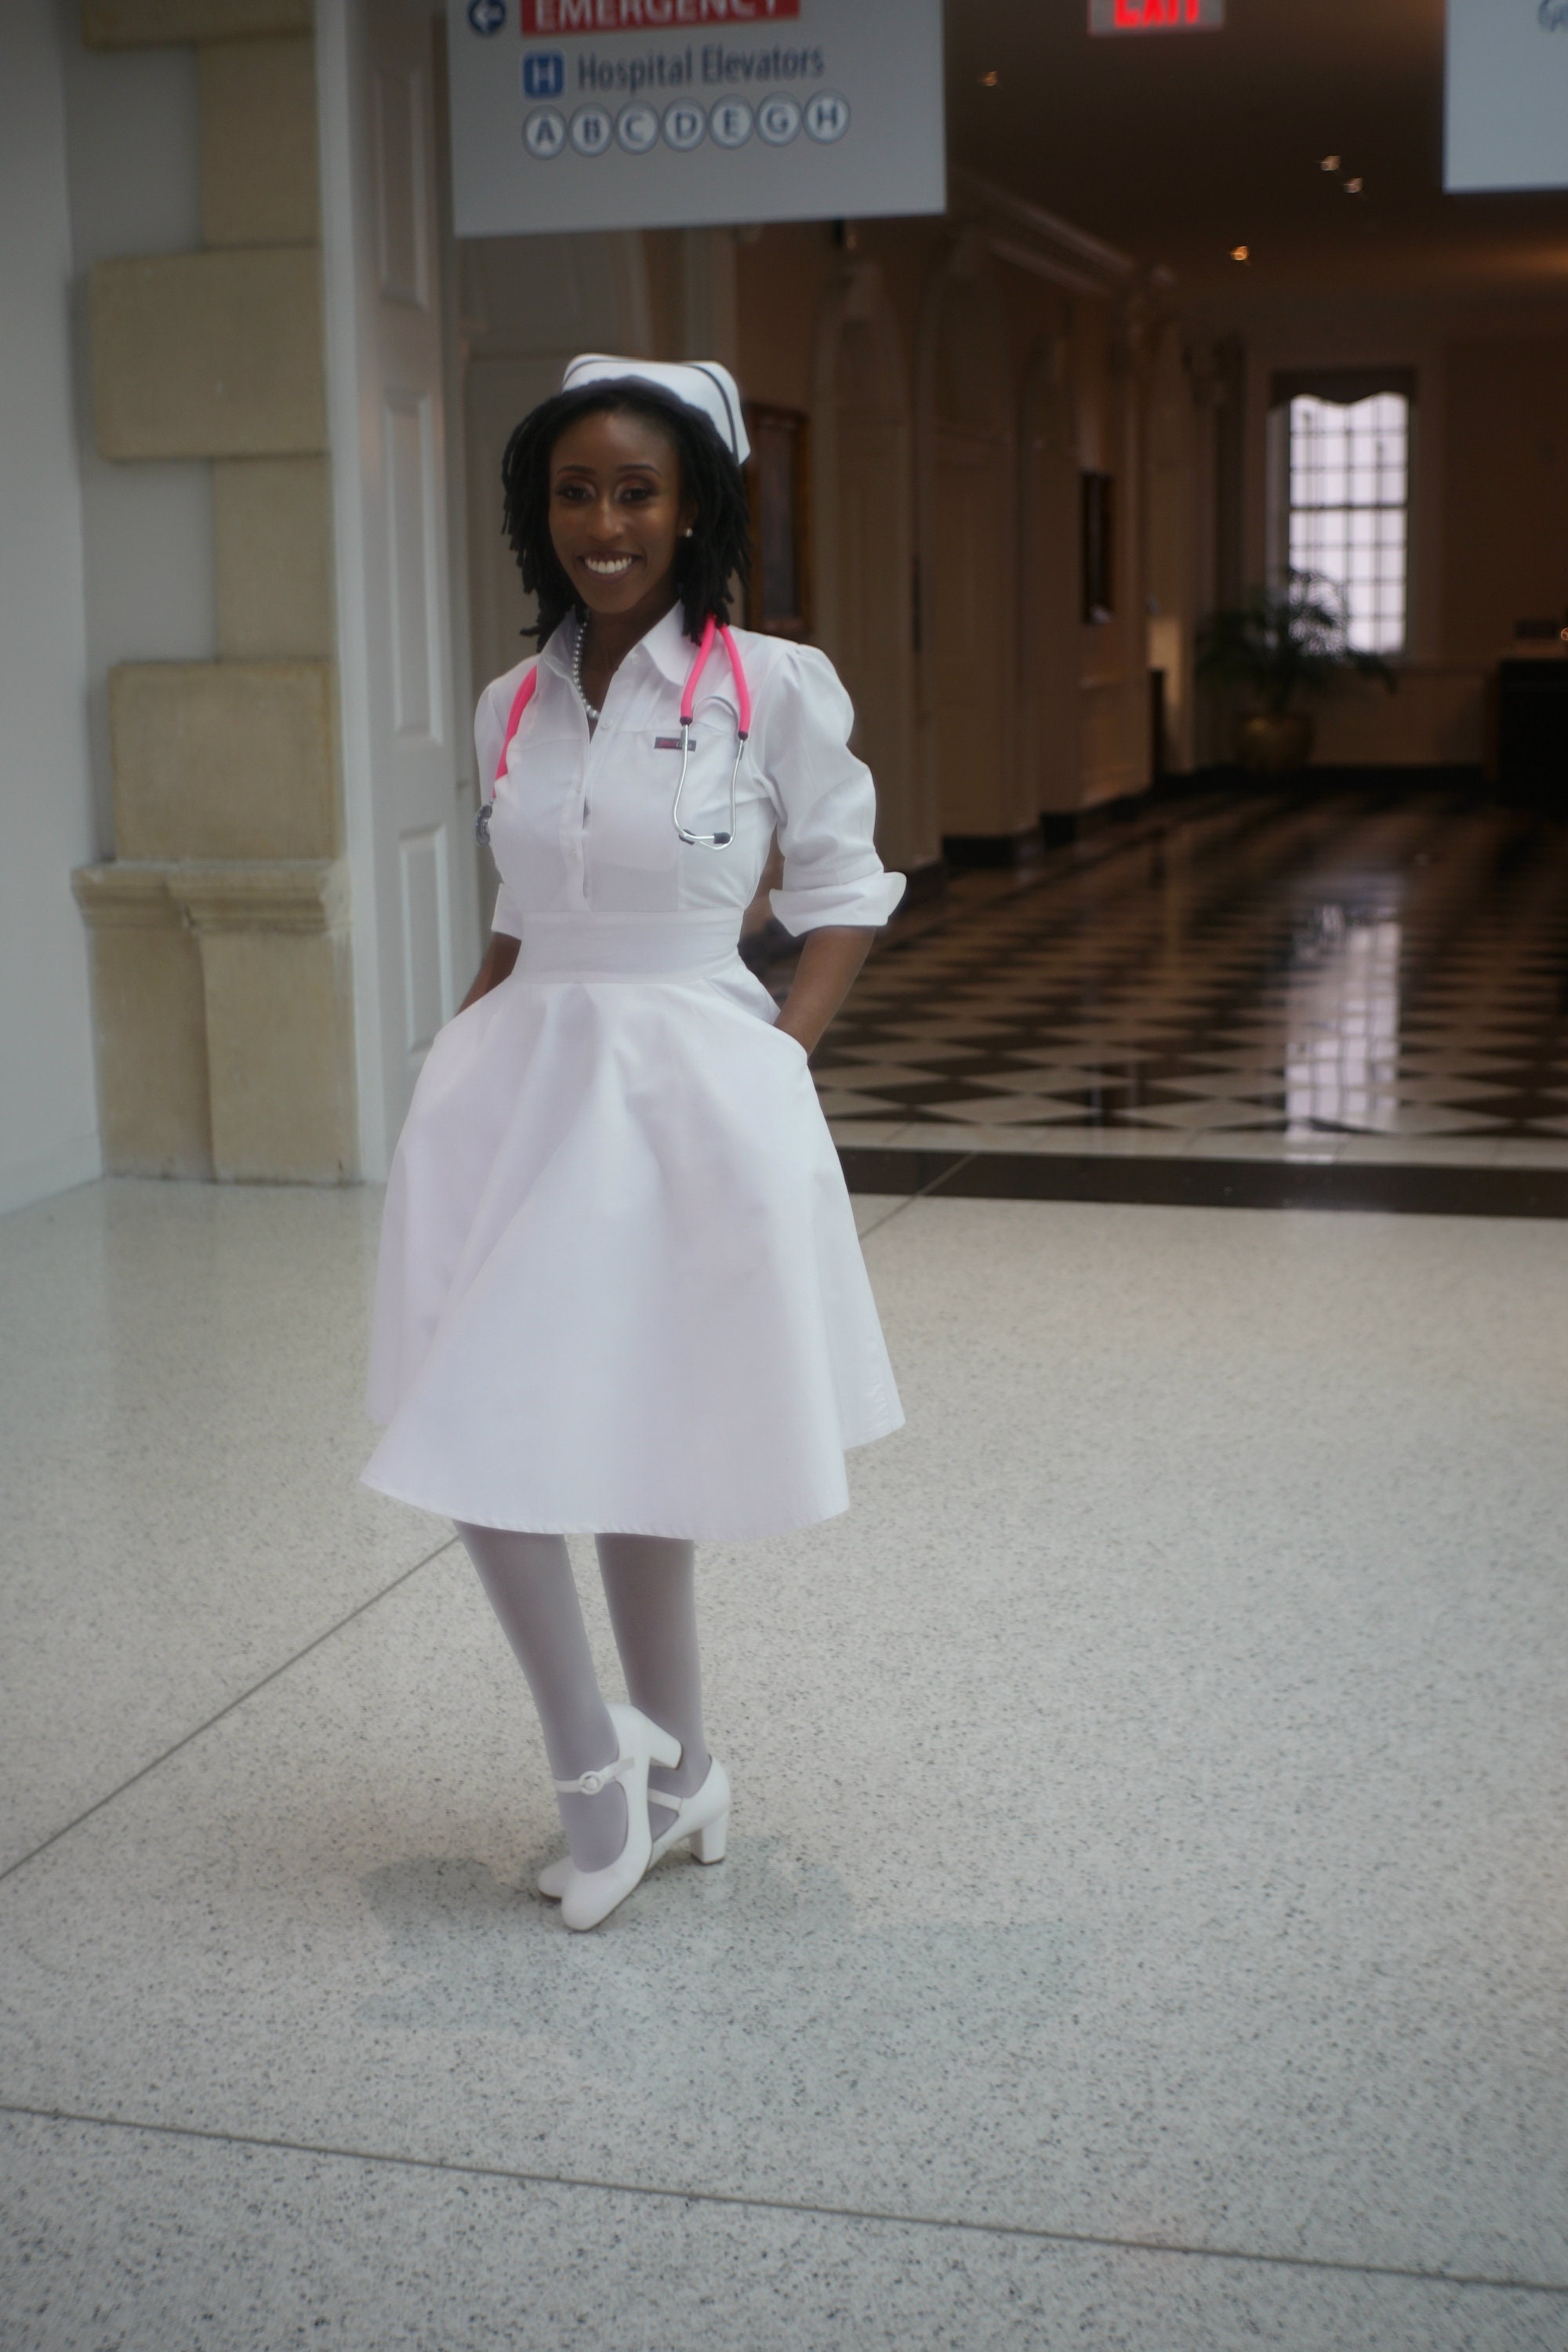 Abigail Israel by Scrub Dress Nurses Uniform -  Canada